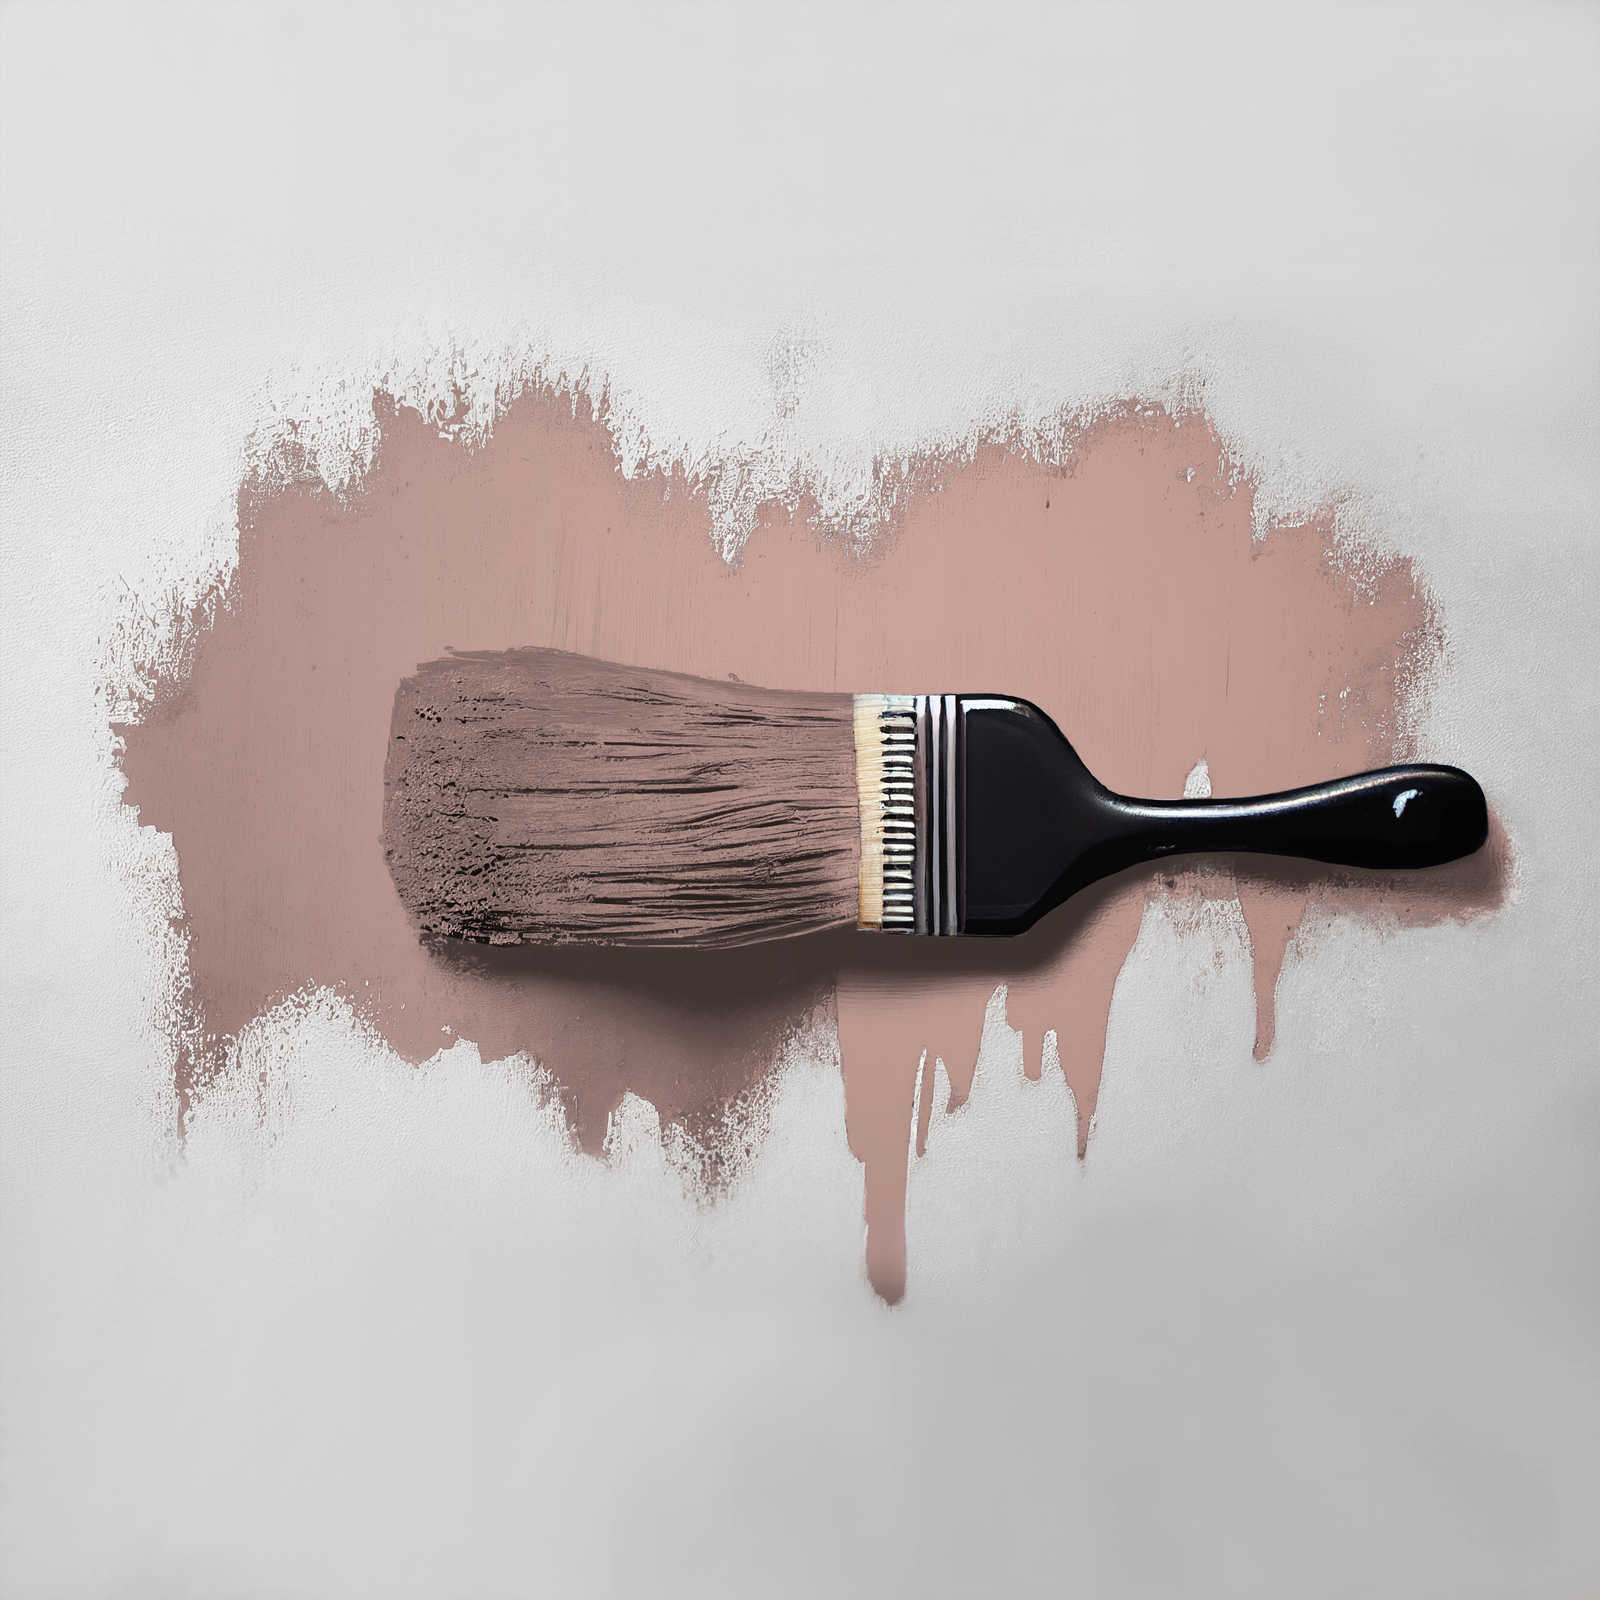             Wall Paint TCK7002 »Jellied Jostaberry« in reddish beige – 2.5 litre
        